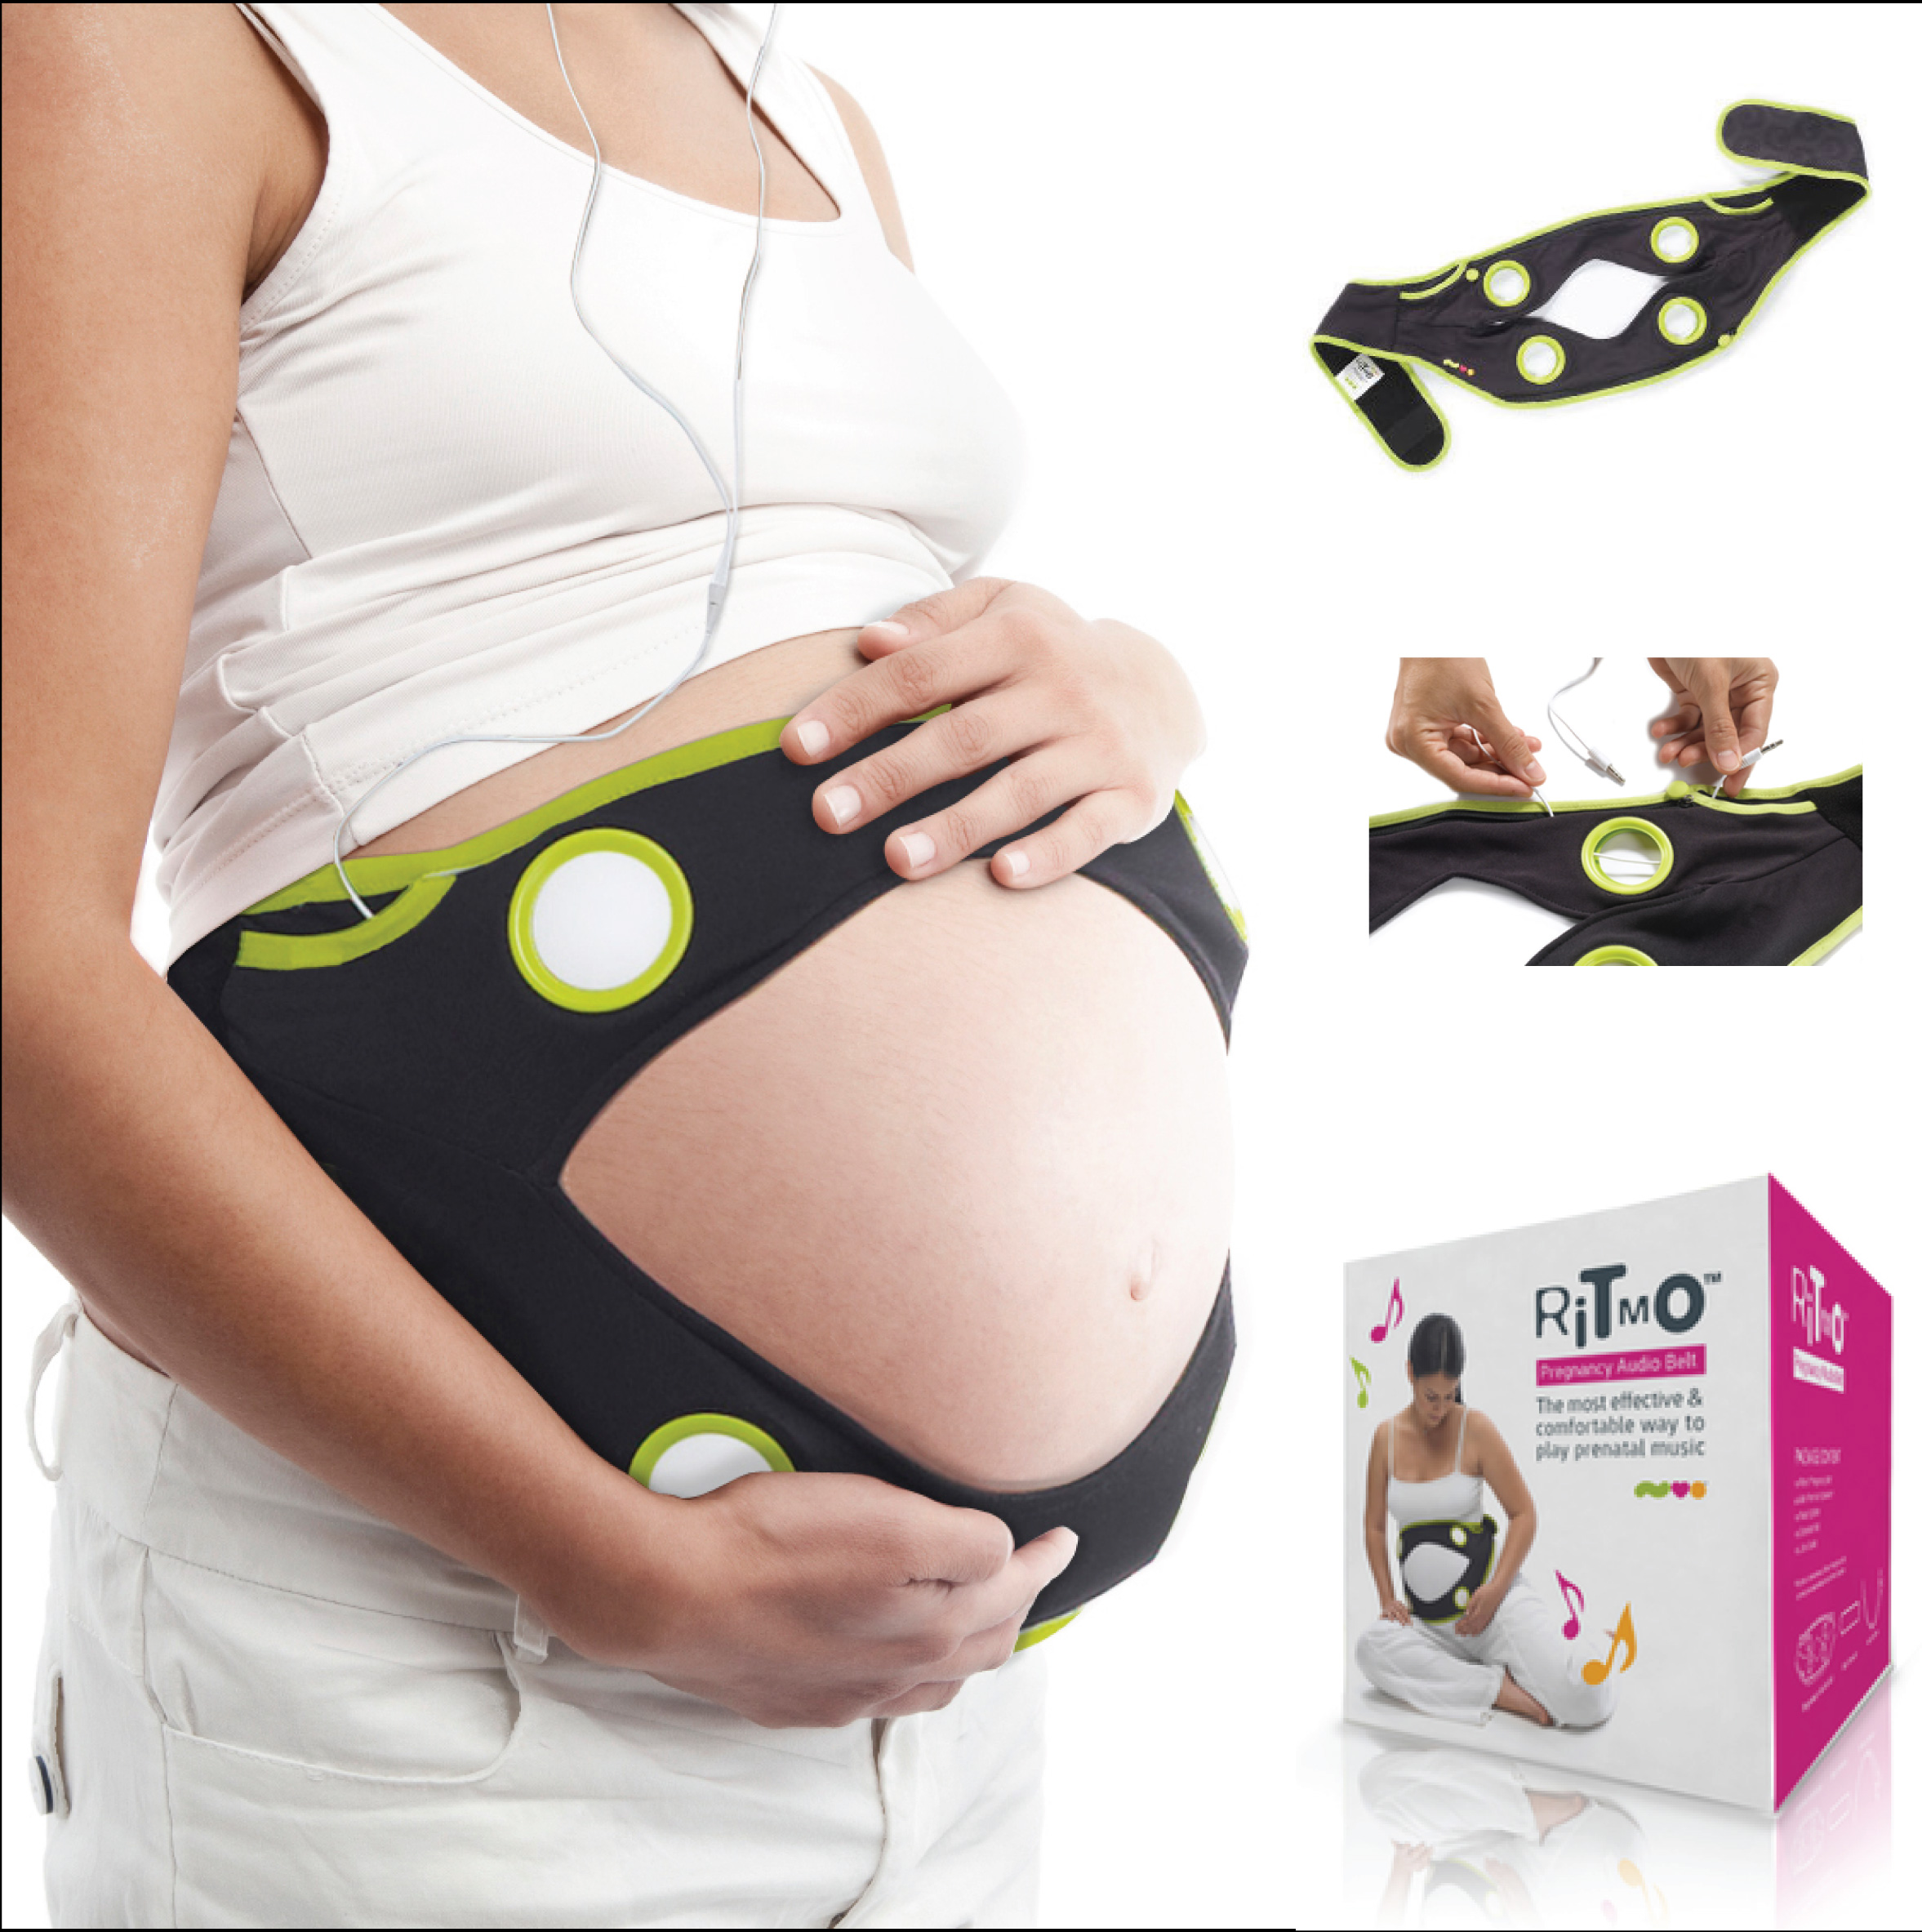 Ritmo Audio belt เข็มขัดเพื่อเพิ่มพัฒนาการของลูกน้อยระหว่างอยู่ในครรภ์